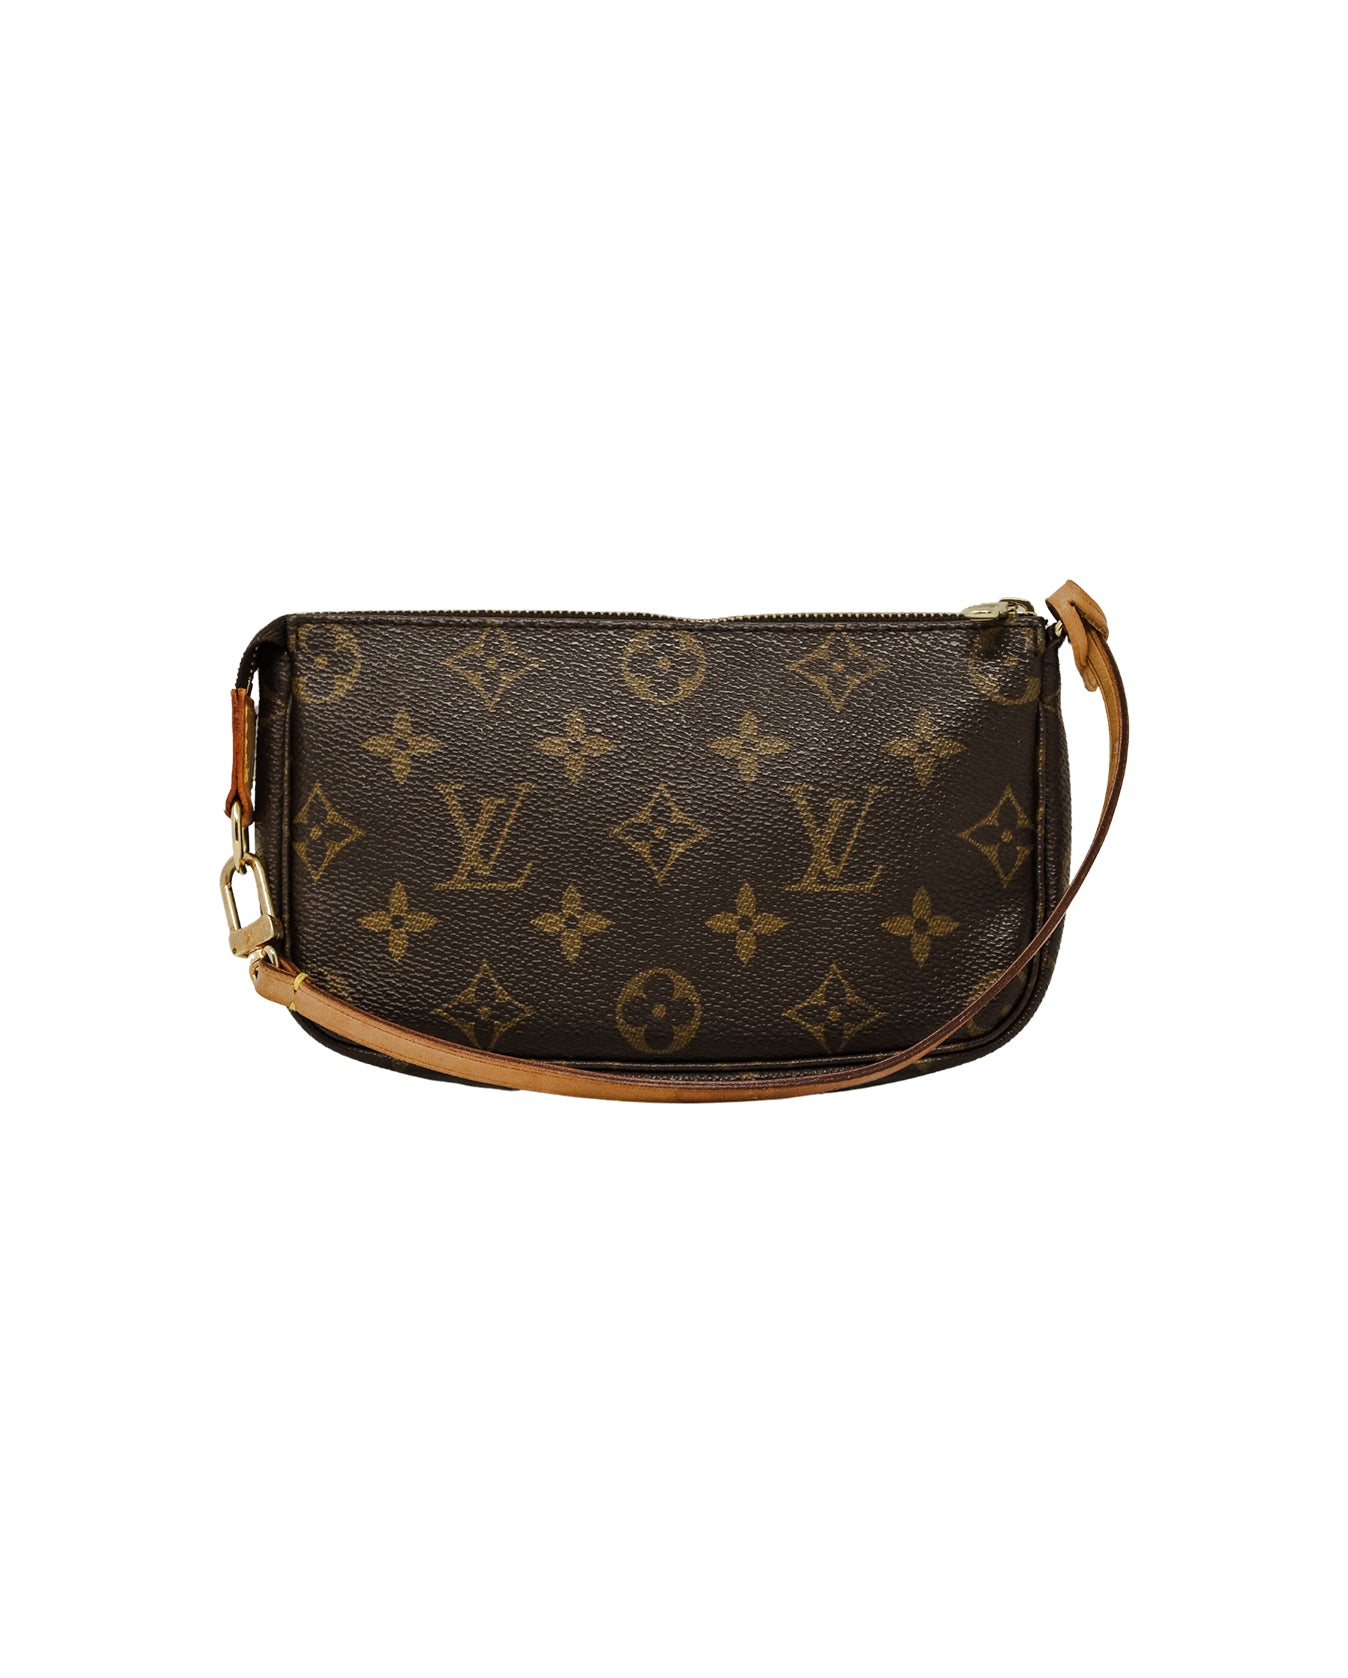 Louis Vuitton 2000 pre-owned Monogram Pochette Accessoires handbag